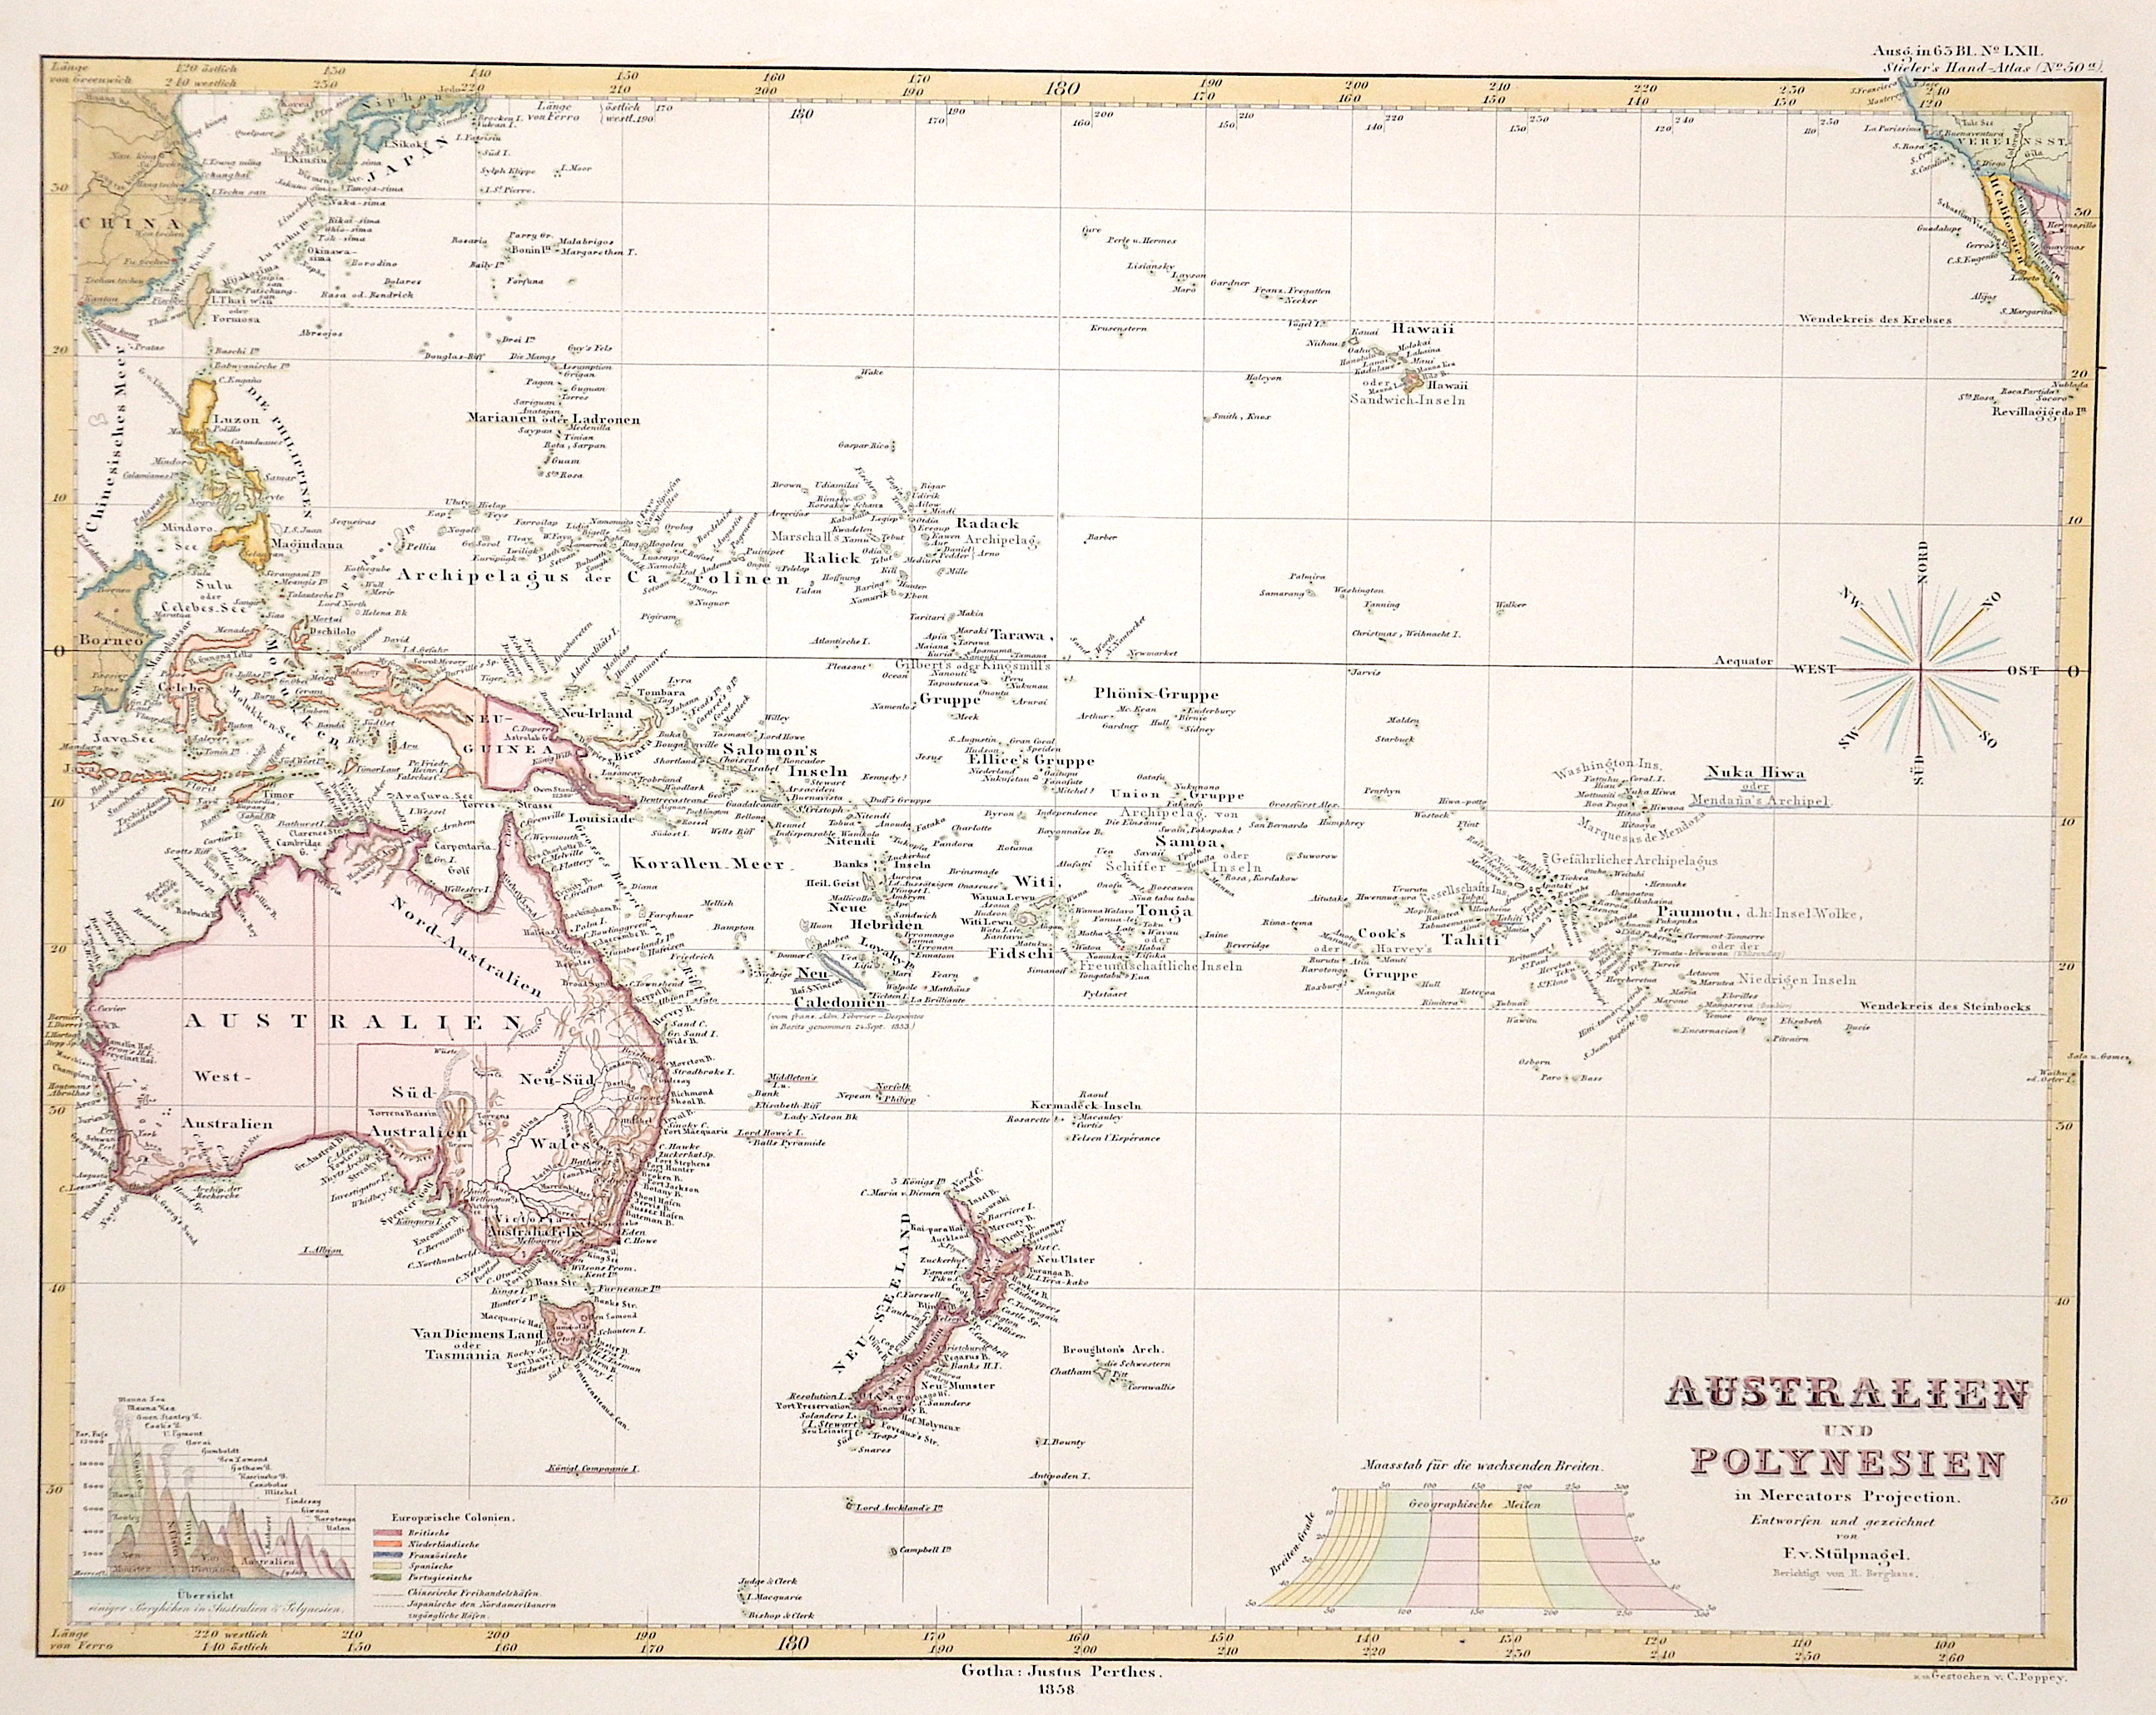 Stülpnagel, von L. Australien und Polynesien in Mercator Projection.